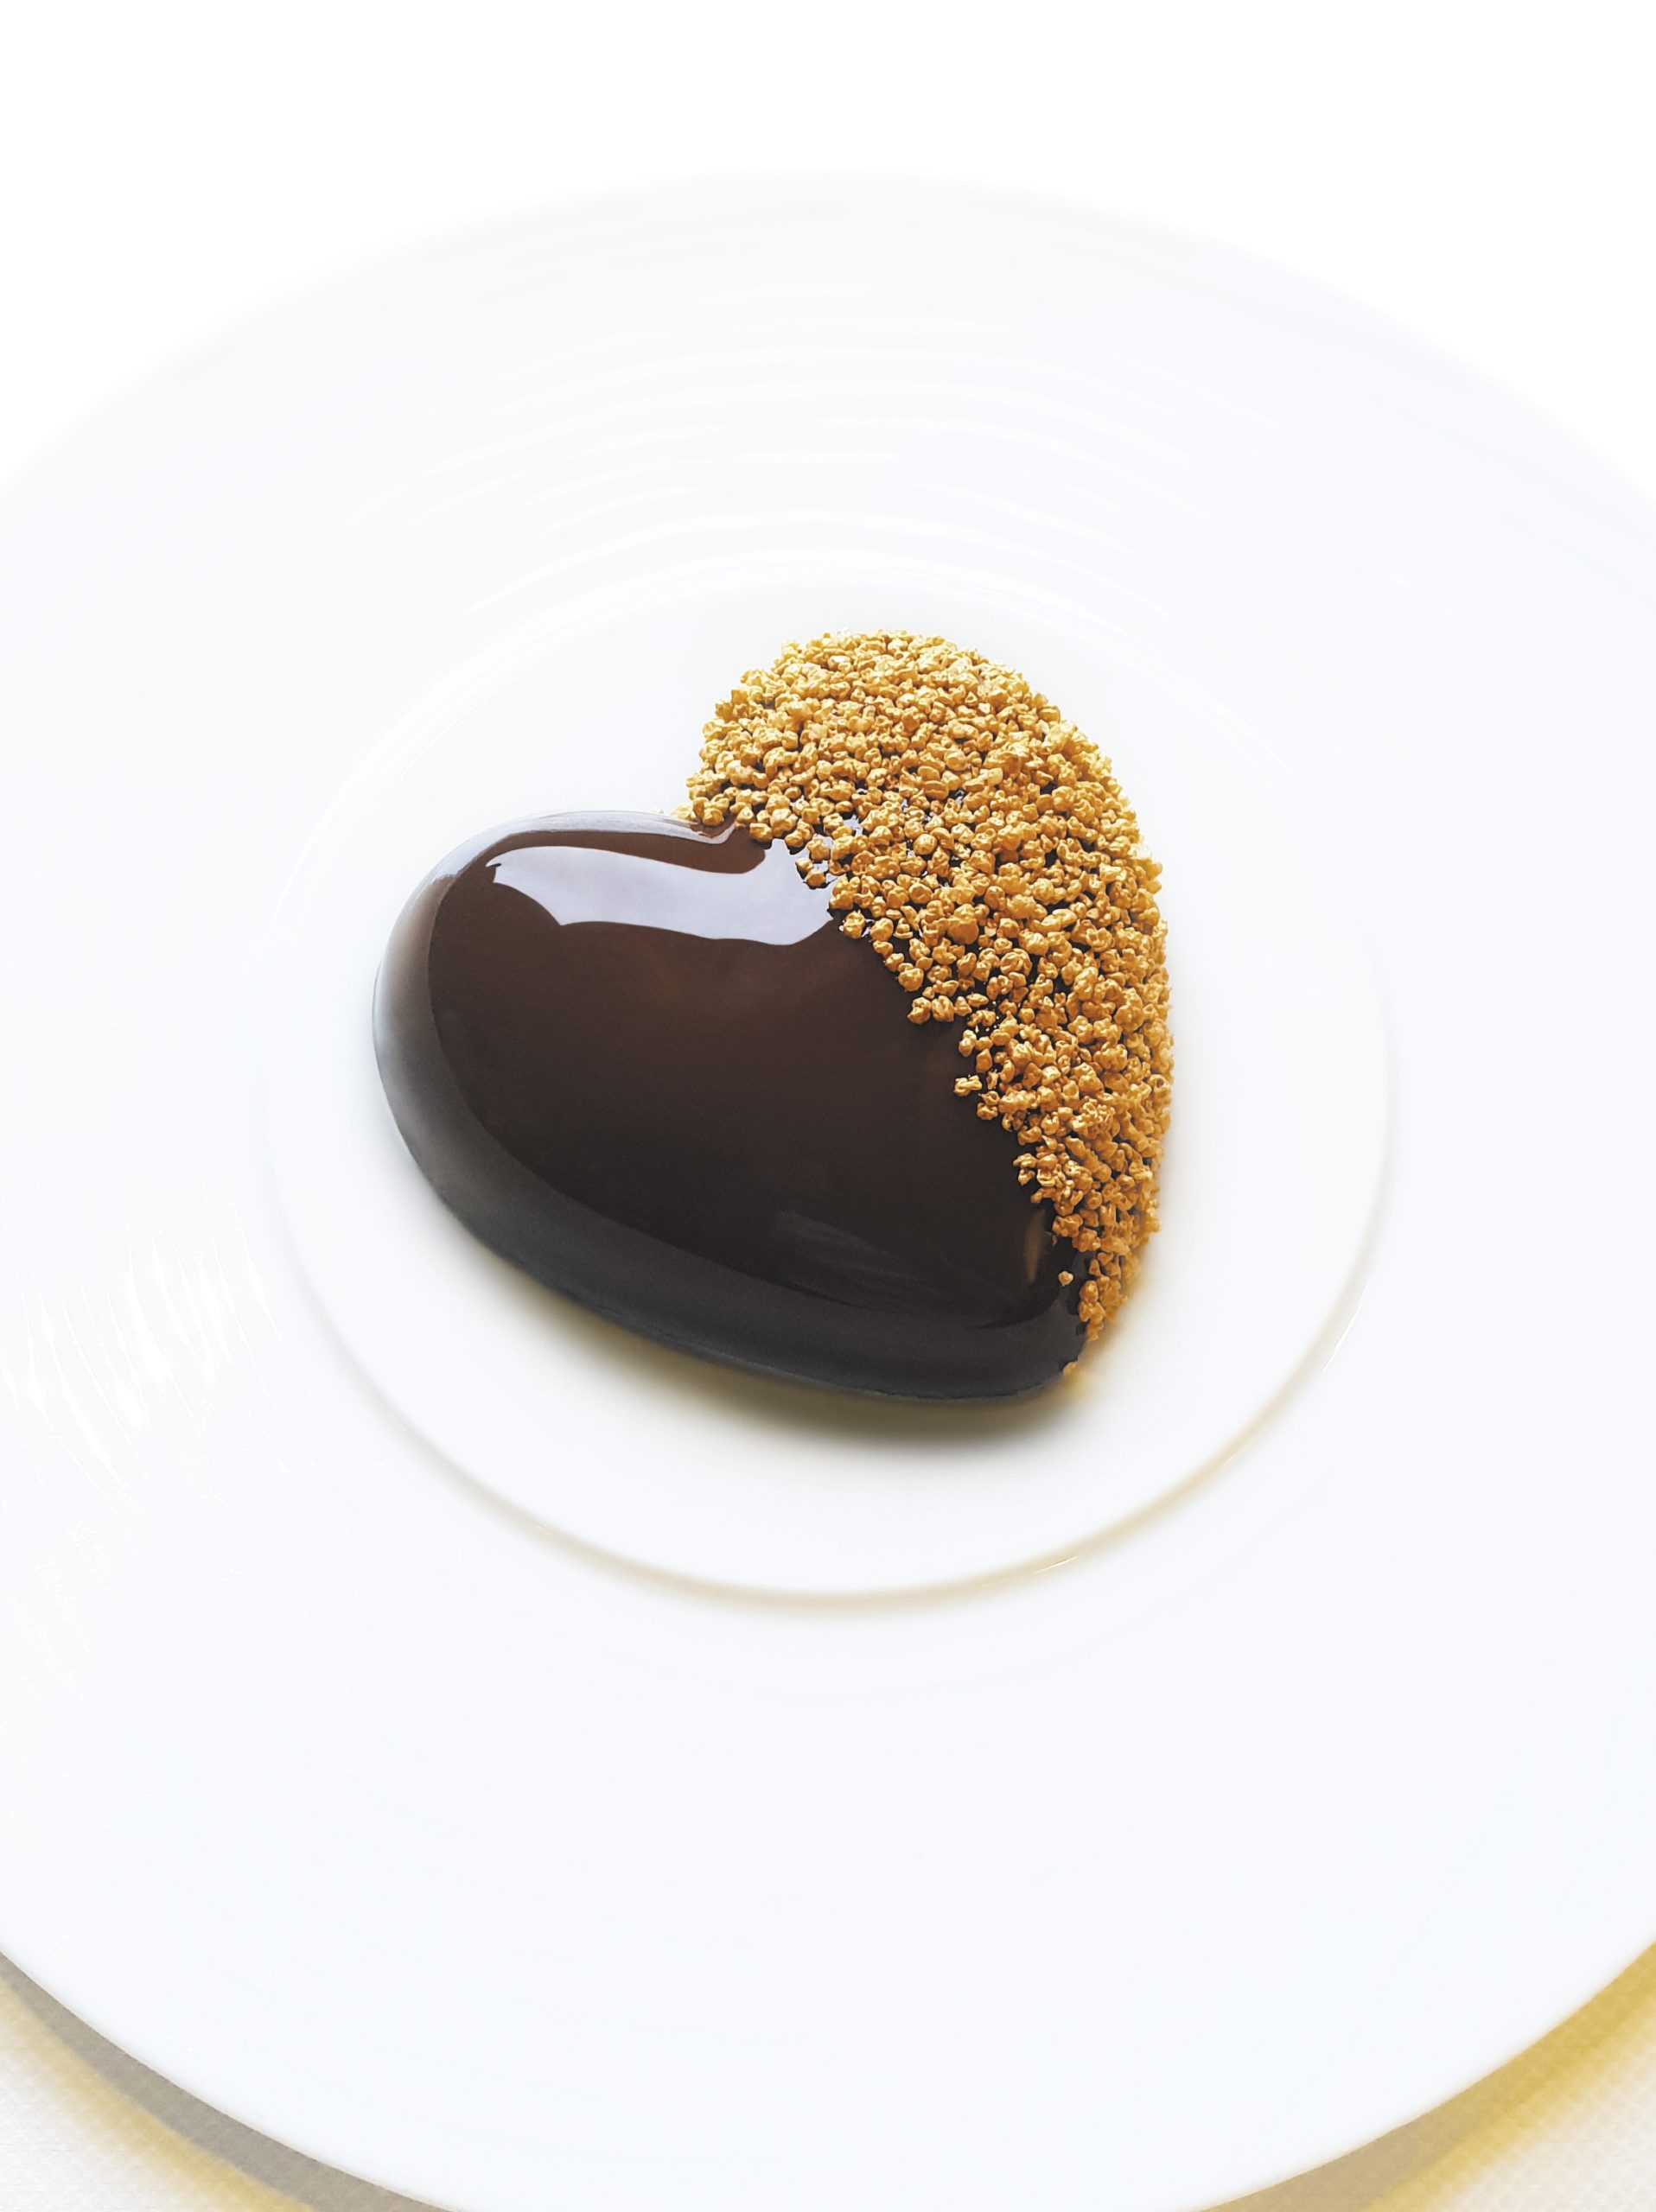 Un Brownie d'Amour, gâteau créé pour la Saint-Valentin par Sophie de Bernardi. (CAFE DE LA PAIX SOPHIE DE BERNARDI)